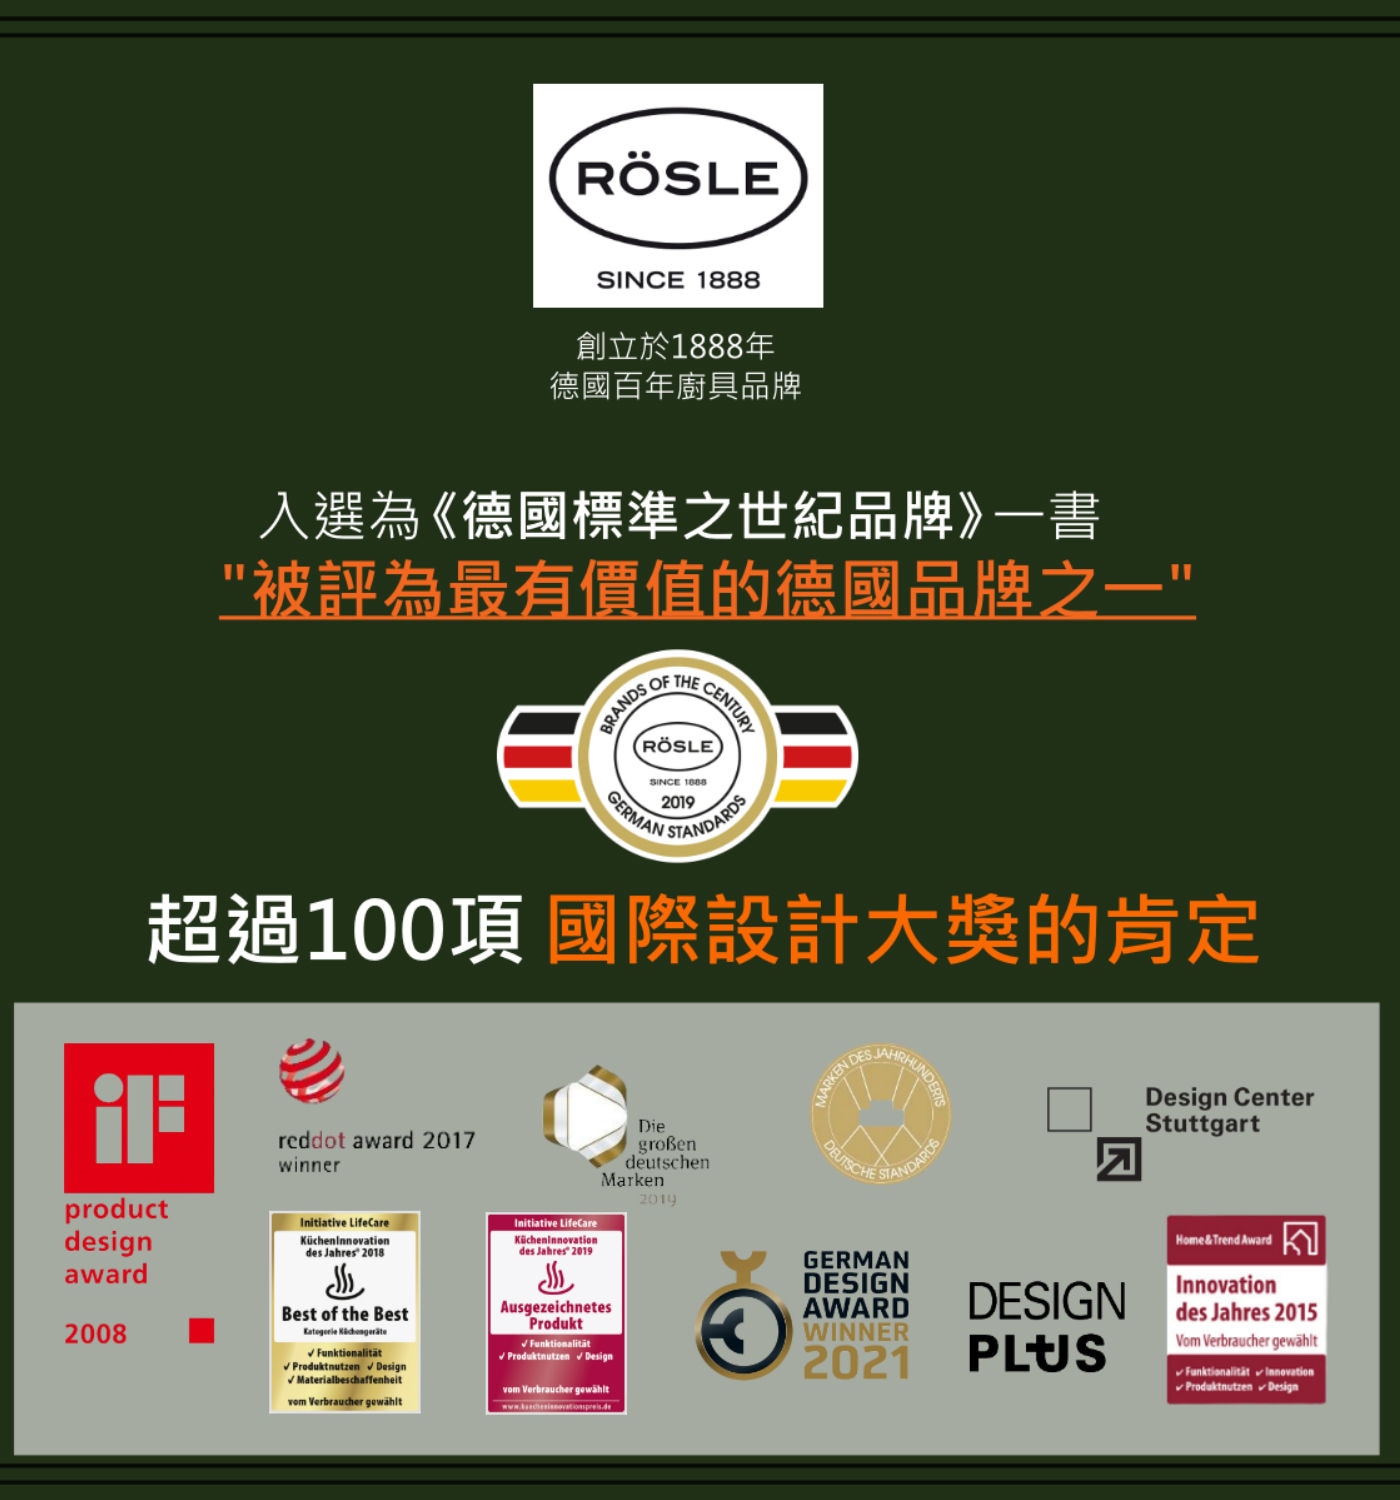 Rosle掛環式矽膠尖嘴夾RÖSLE創立於1888年德國百年廚具品牌.入選為德國標準之世紀品牌一書被評為最有價值的德國品牌之一超過100項國際設計大獎的肯定